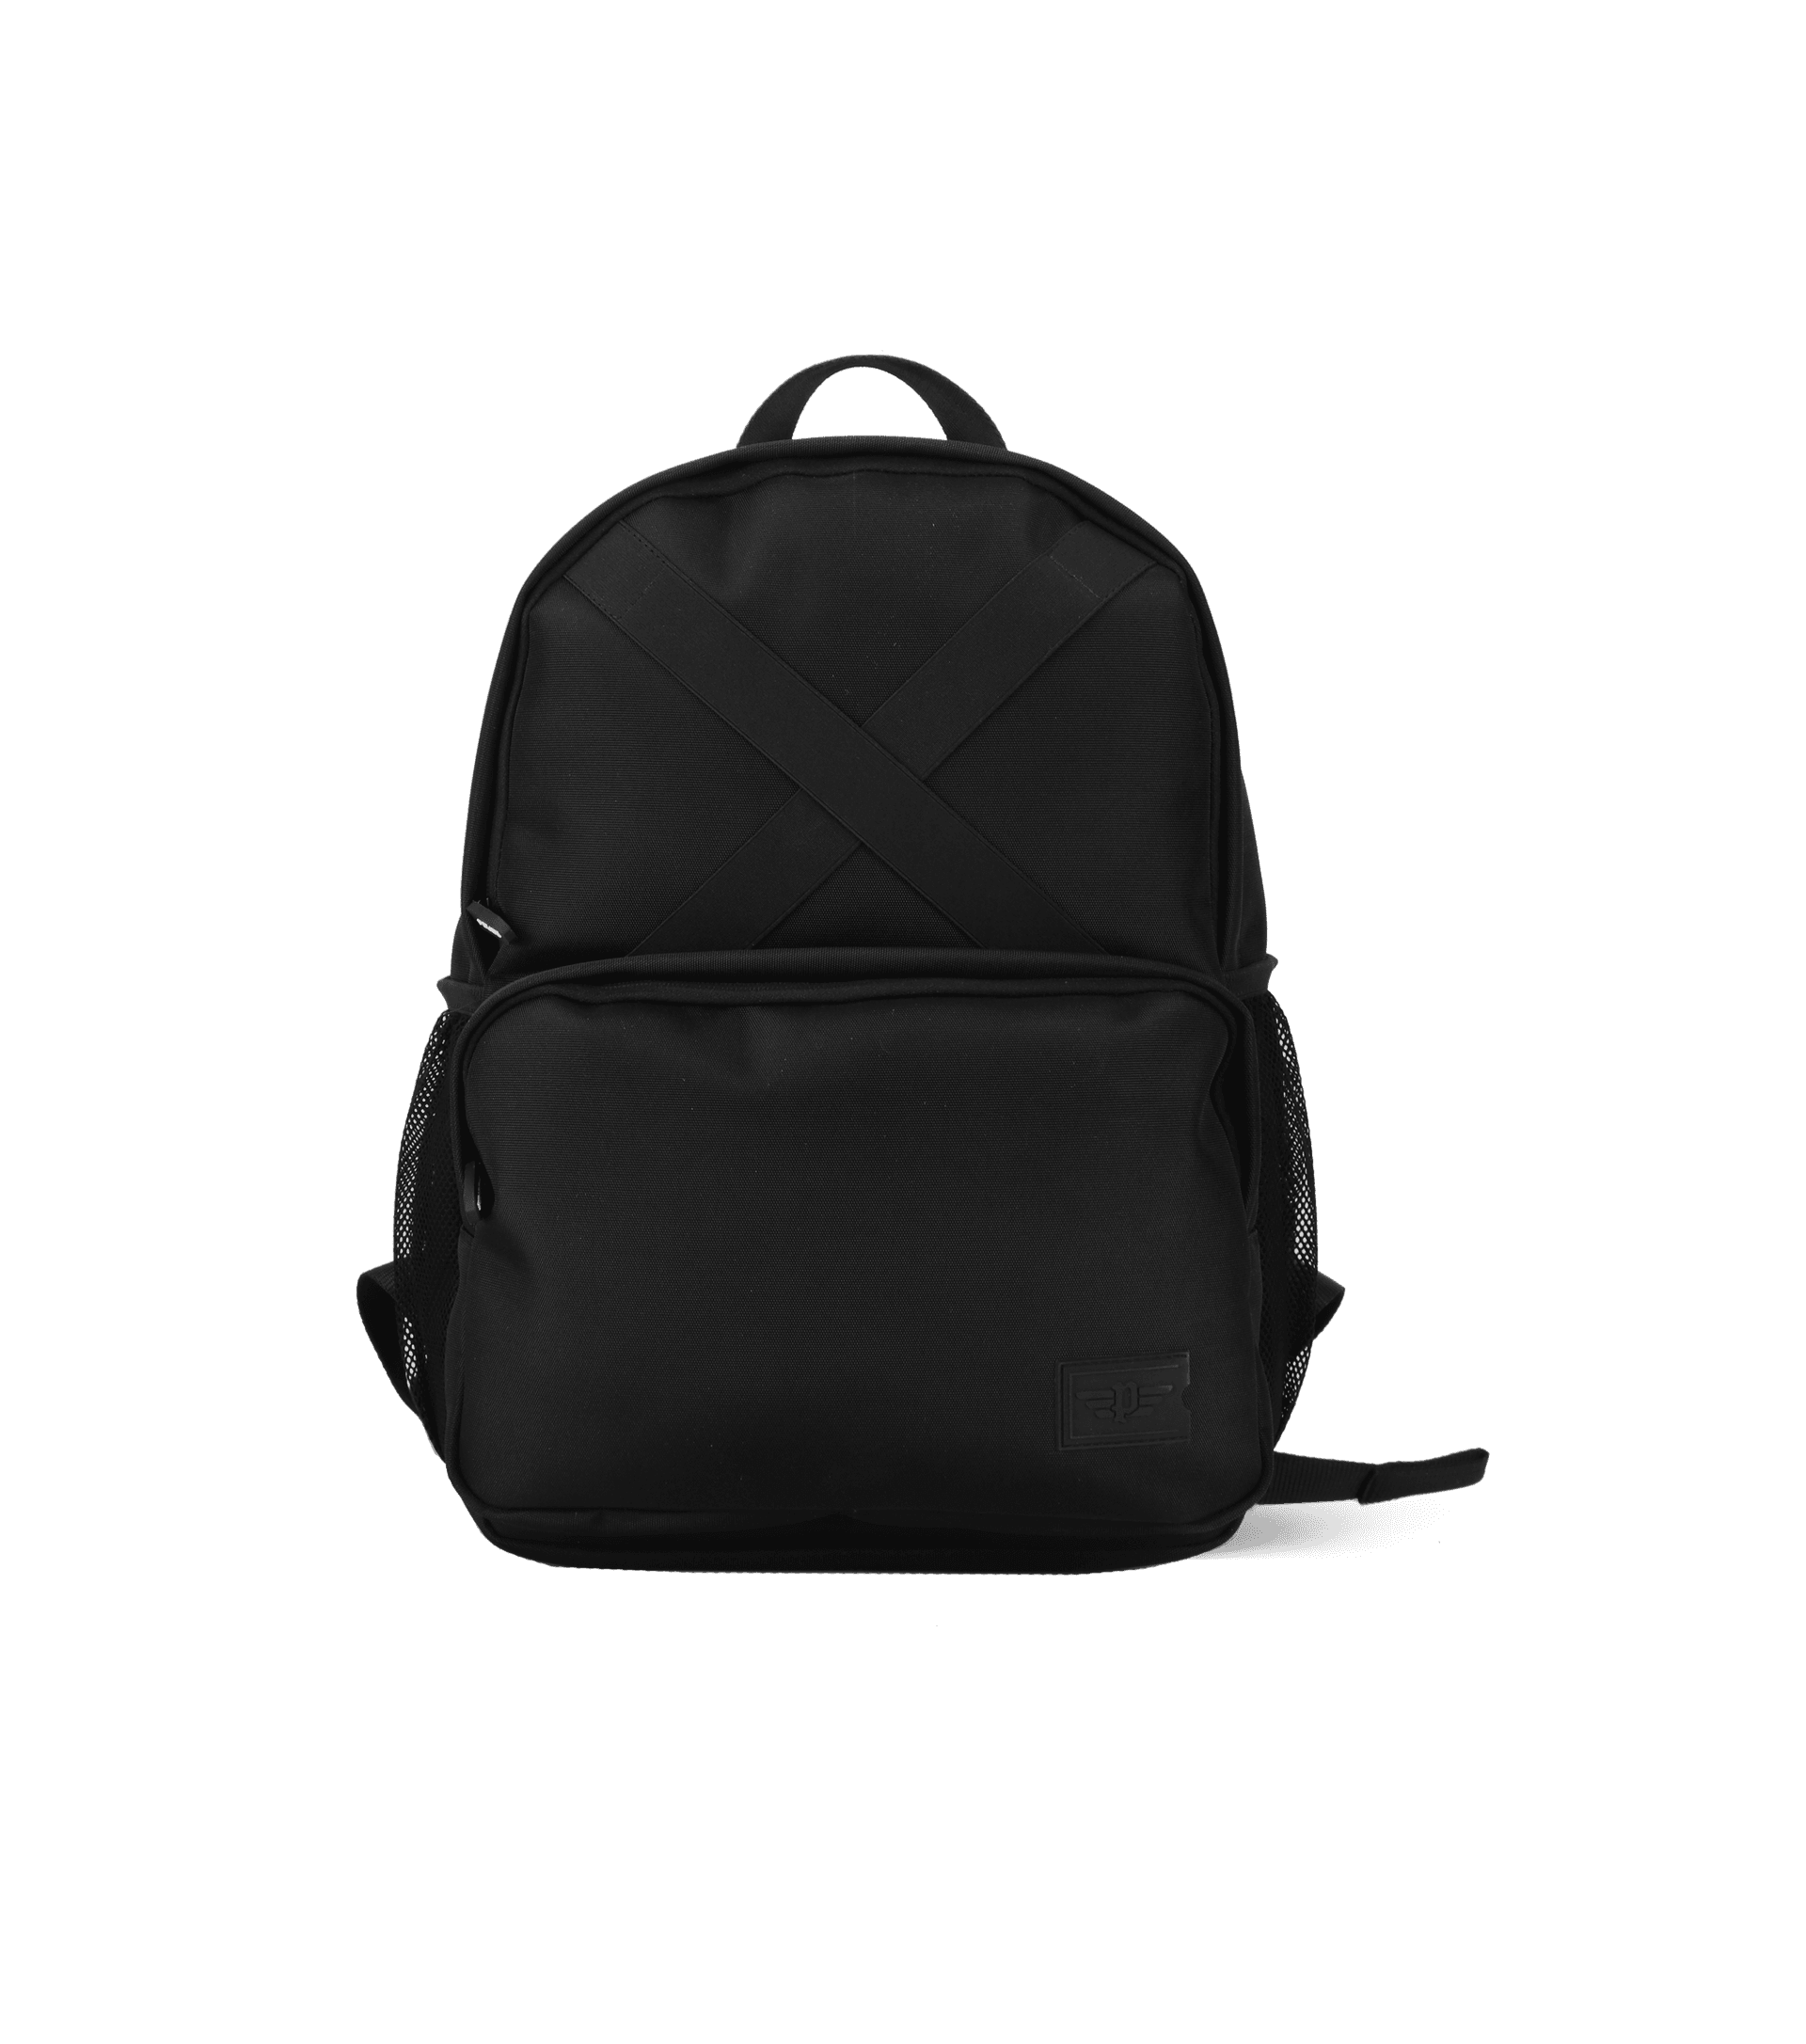 Police backpacks - Police Corrado Nylon Backpack Black